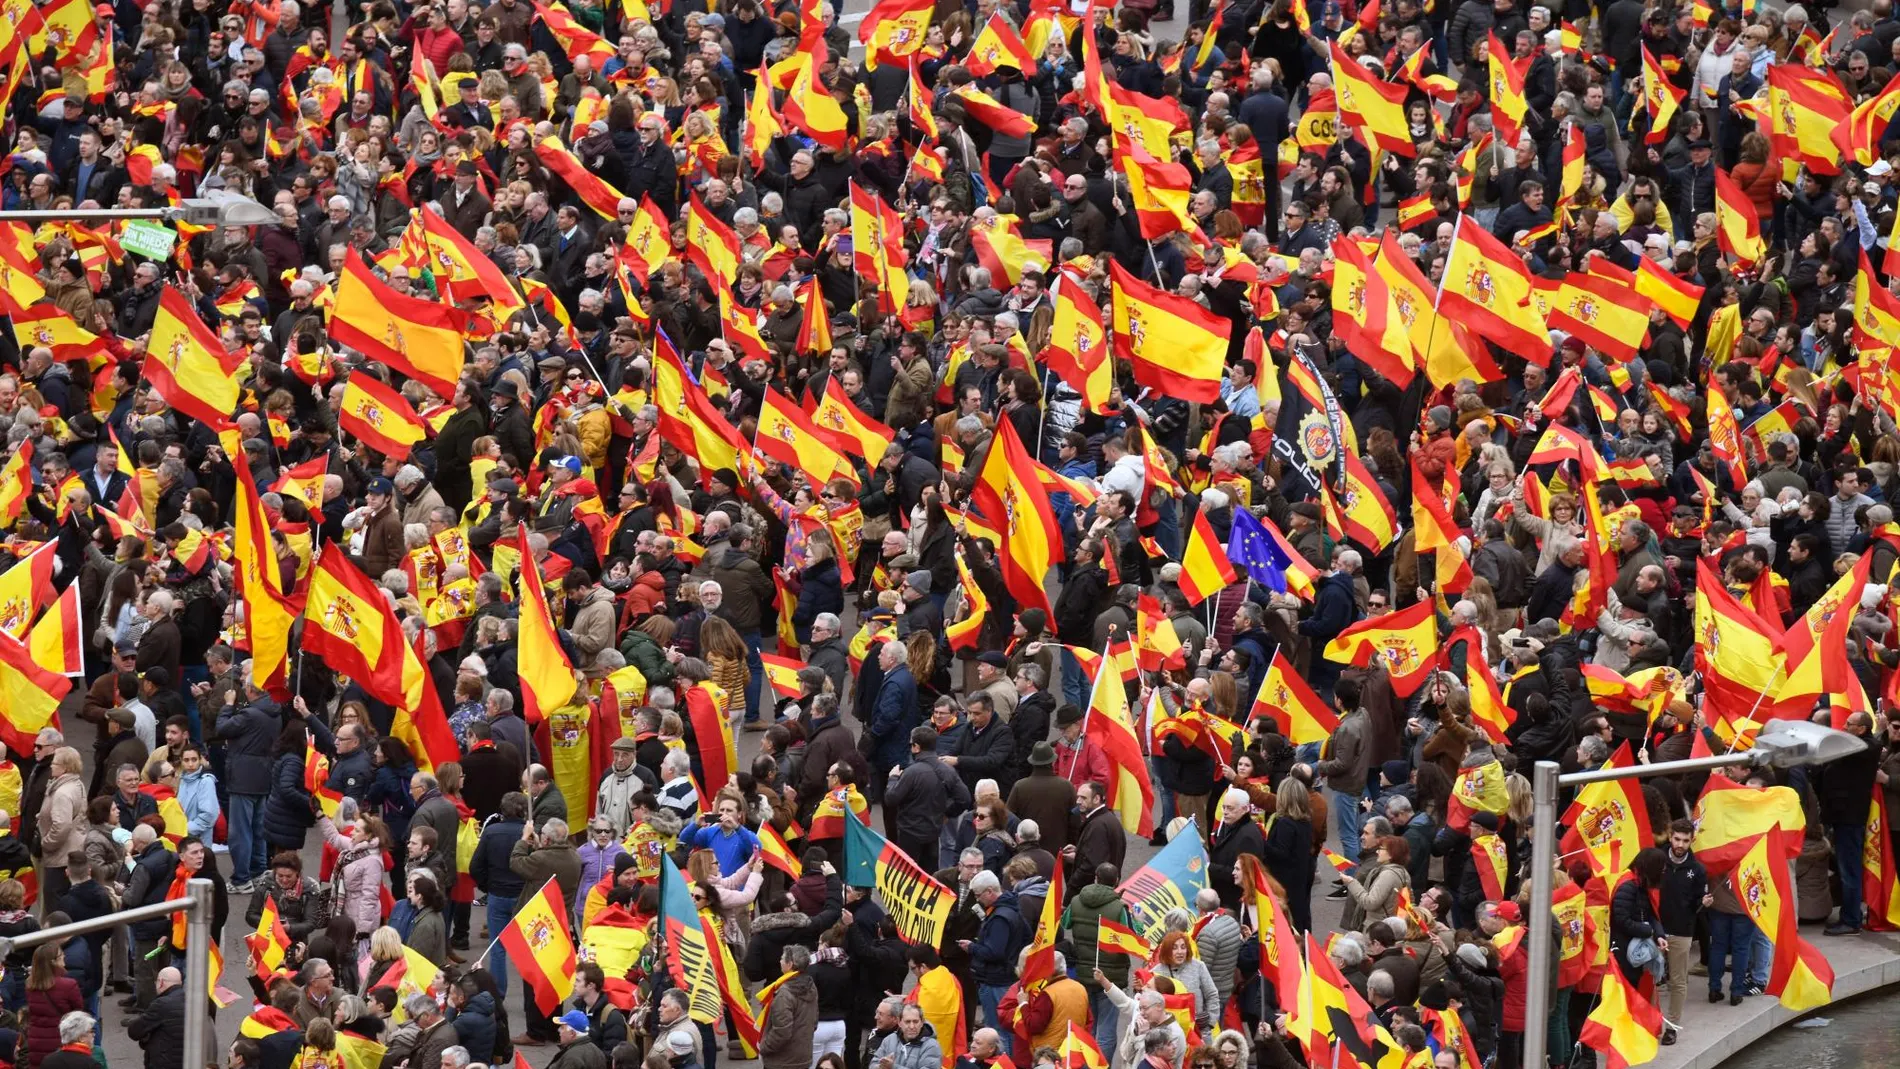 Concentración convocada por PP, Ciudadanos y VOX este domingo en la plaza de Colón de Madrid, en protesta por el diálogo de Pedro Sánchez con los independentistas catalanes y en demanda de elecciones generales./Efe